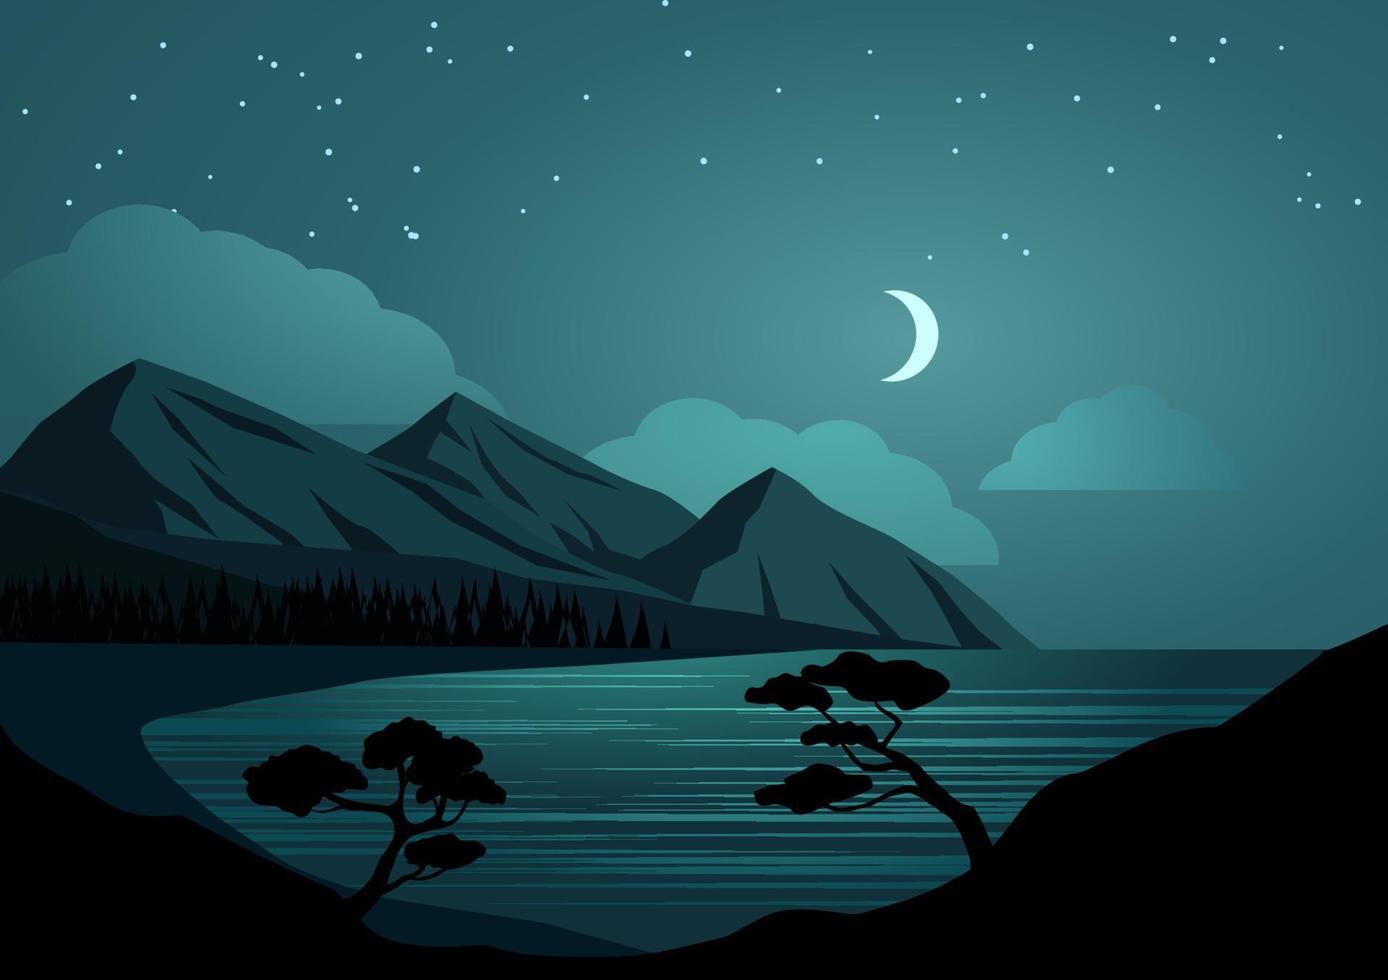 berg nacht landschap met heuvels, meer, maan en sterren. vector vlak ontwerp landschap illustratie